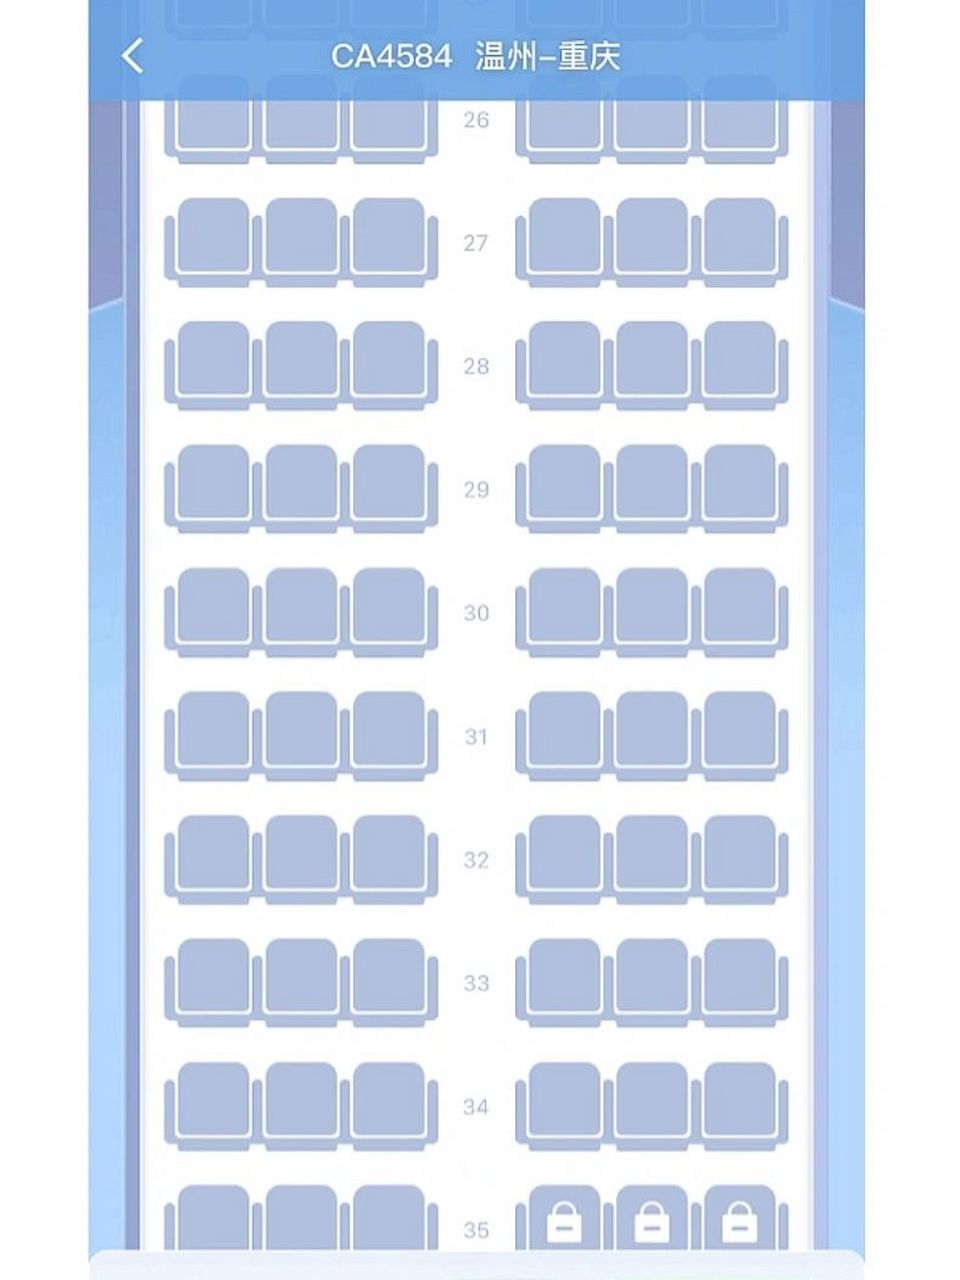 中型机座位图图片